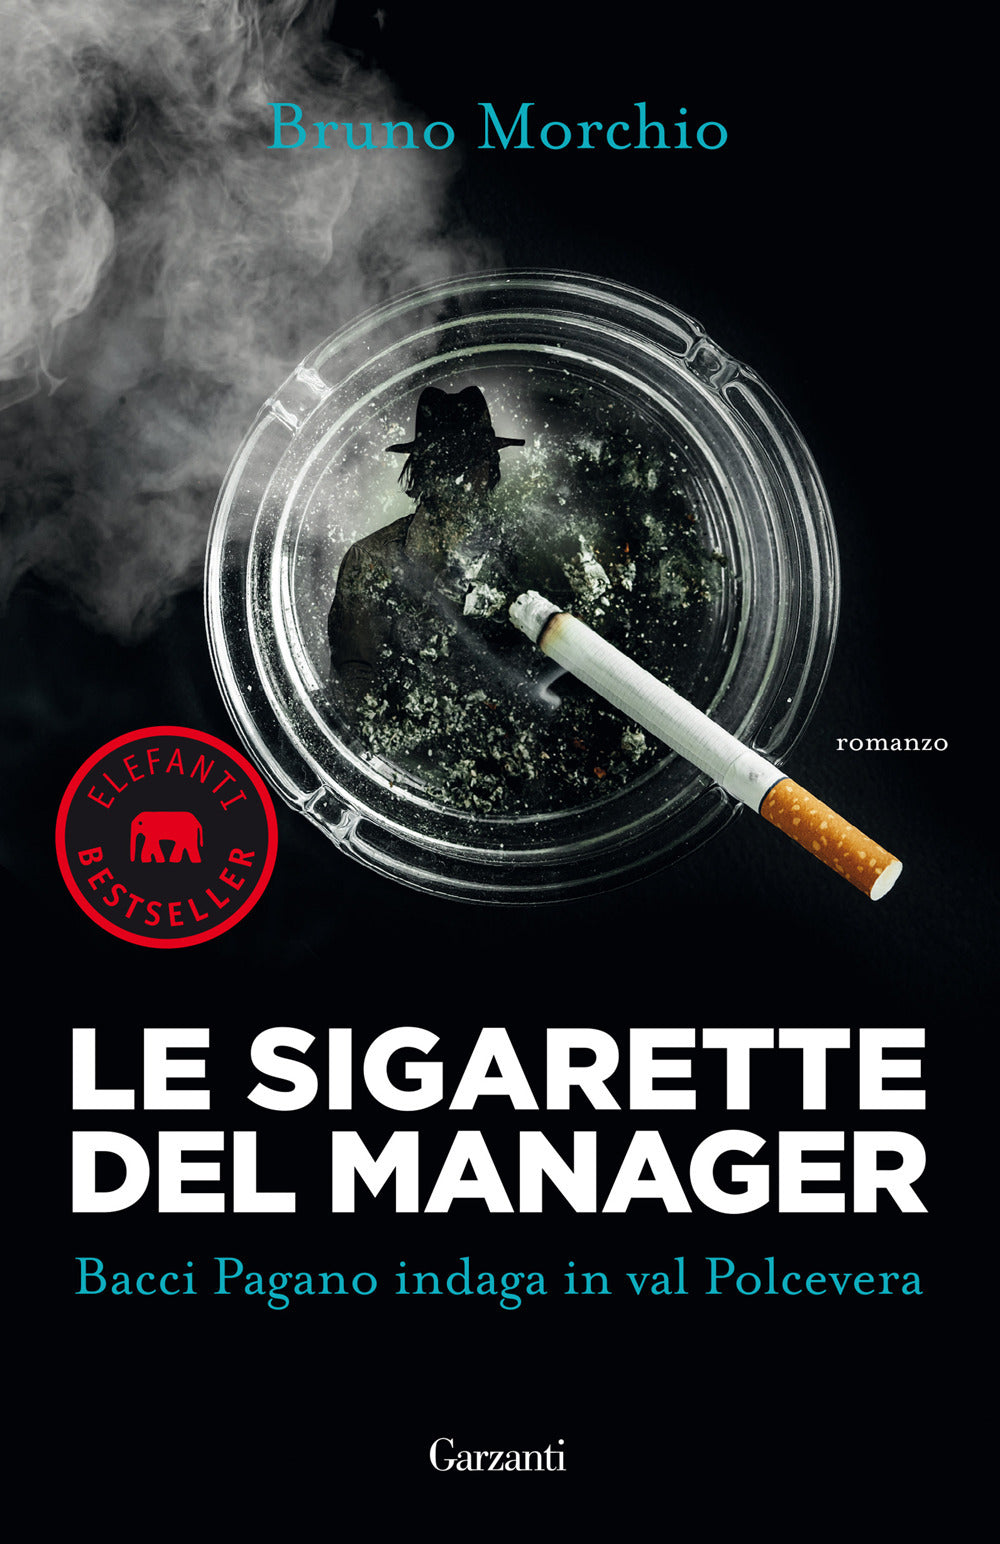 Le sigarette del manager. Bacci Pagano indaga in val Polcevera.